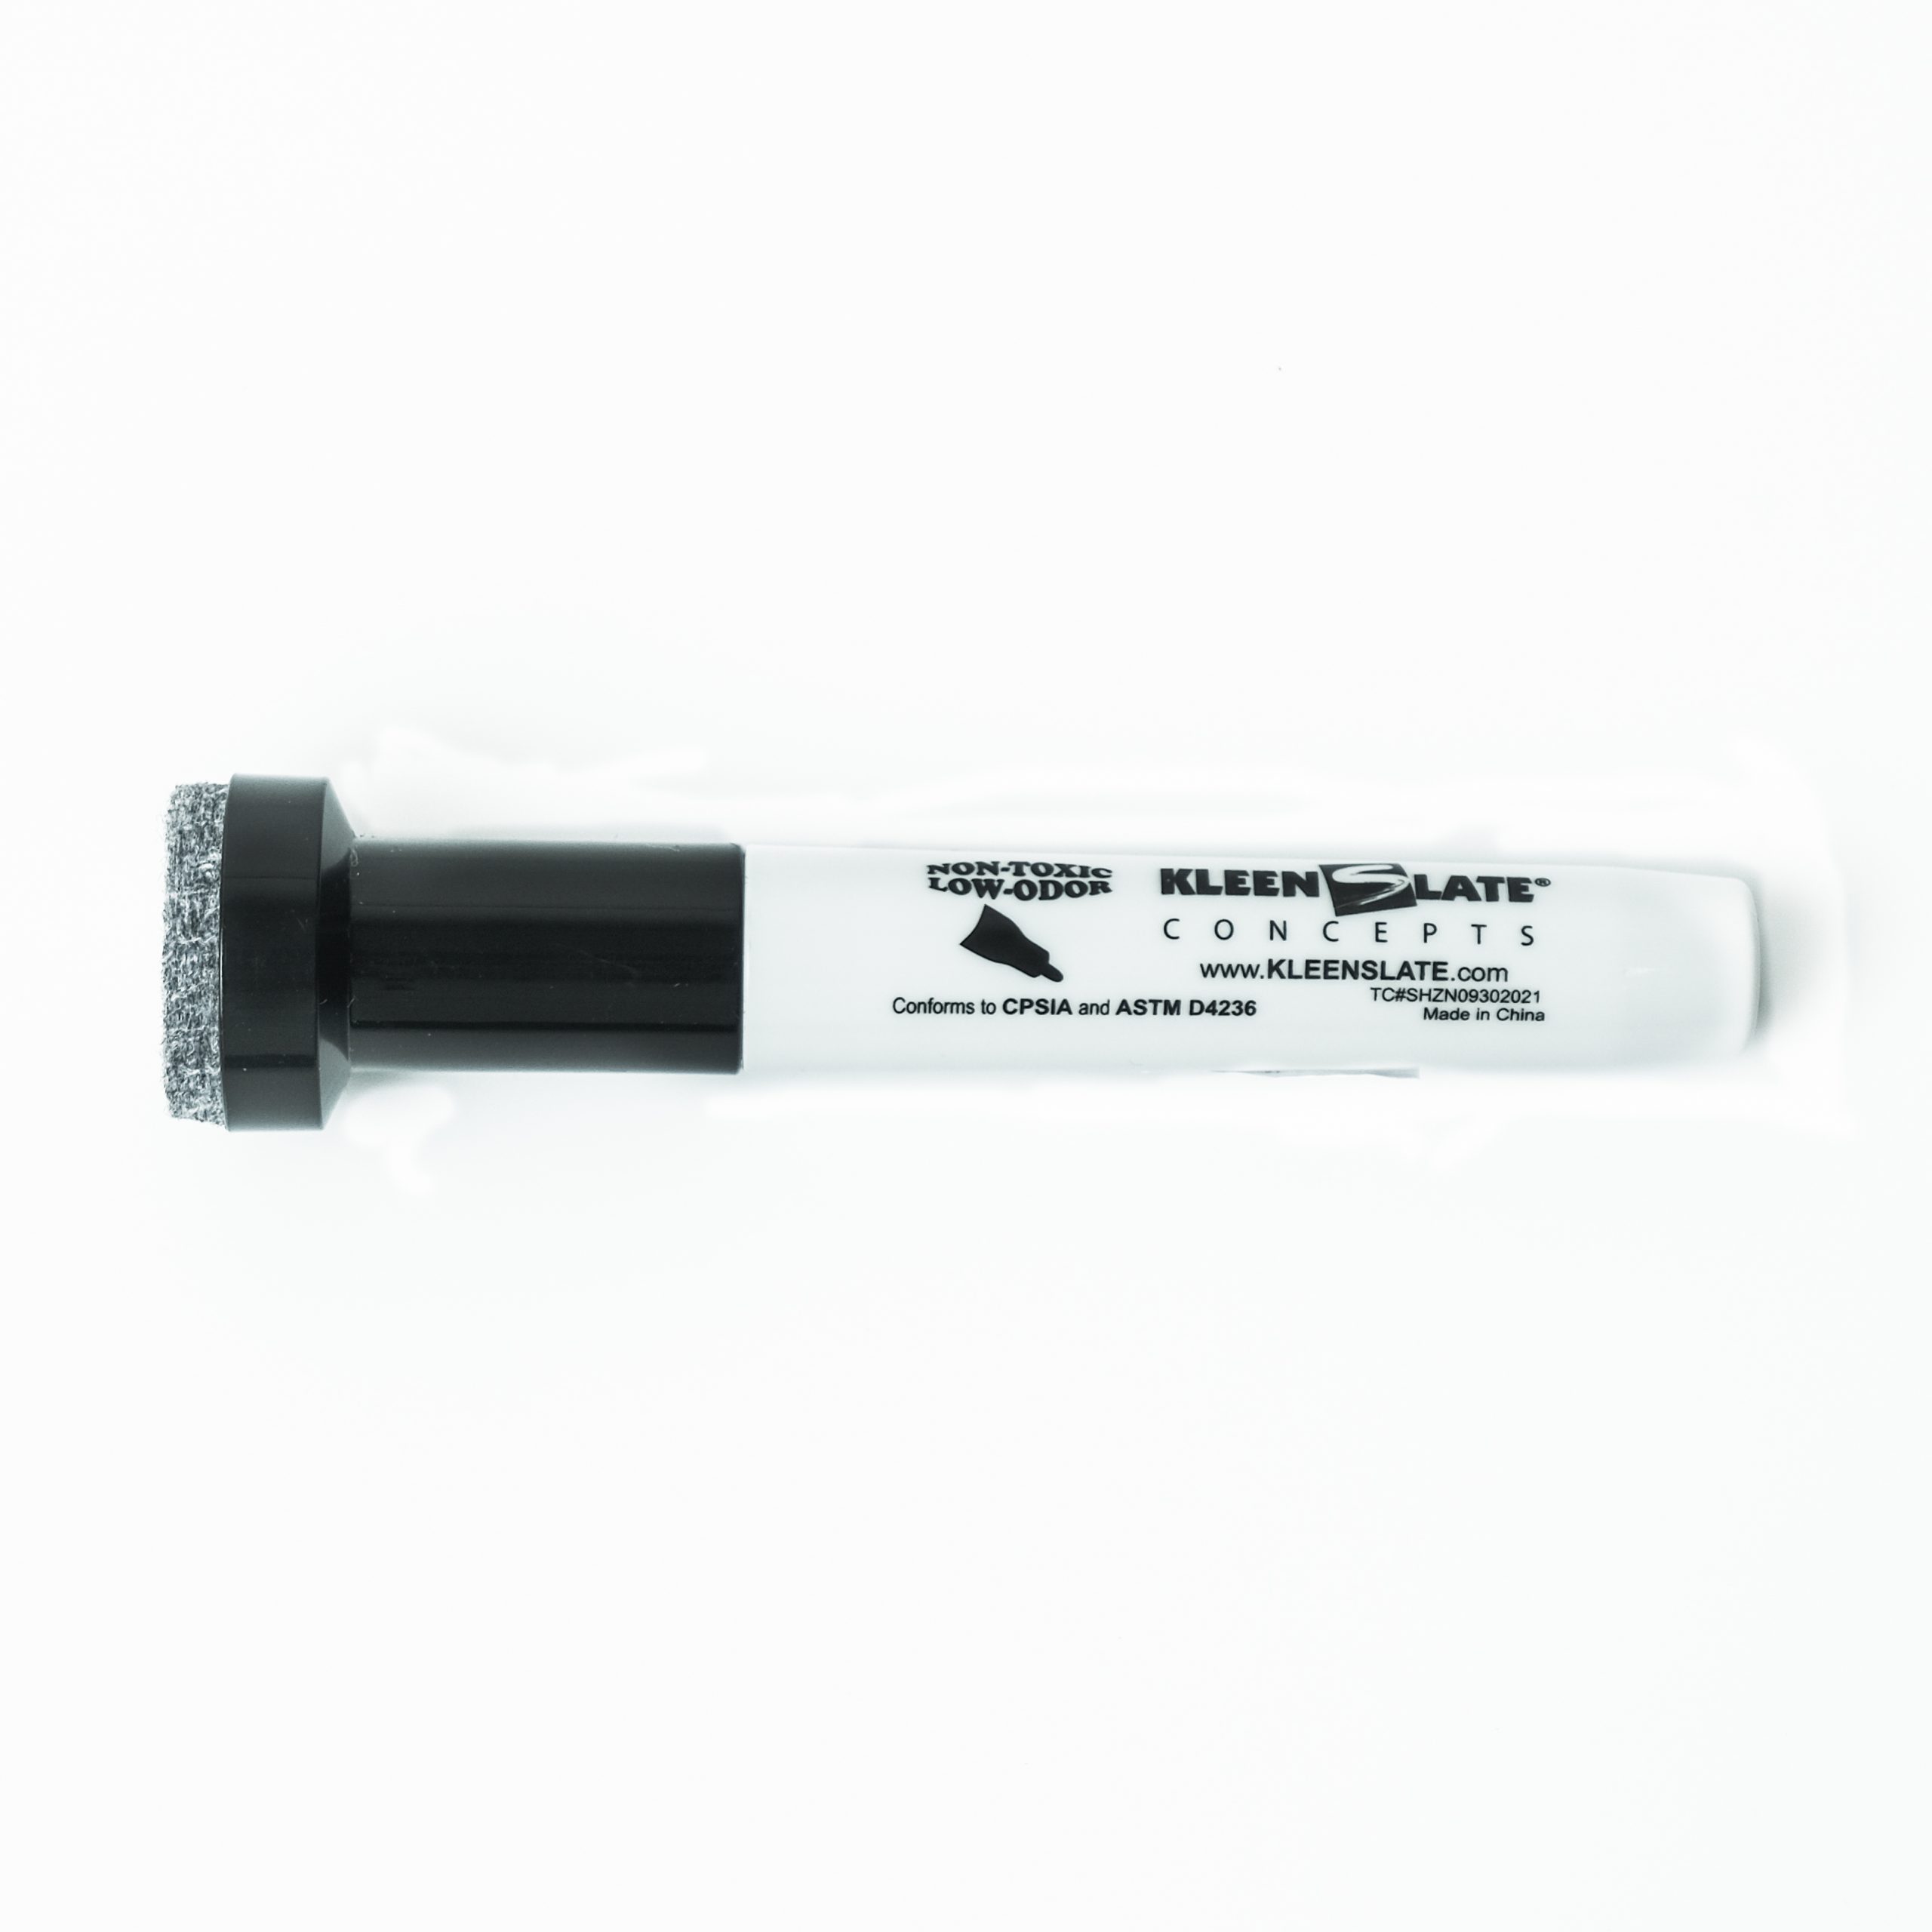 Dry Erase Marker with Eraser Cap